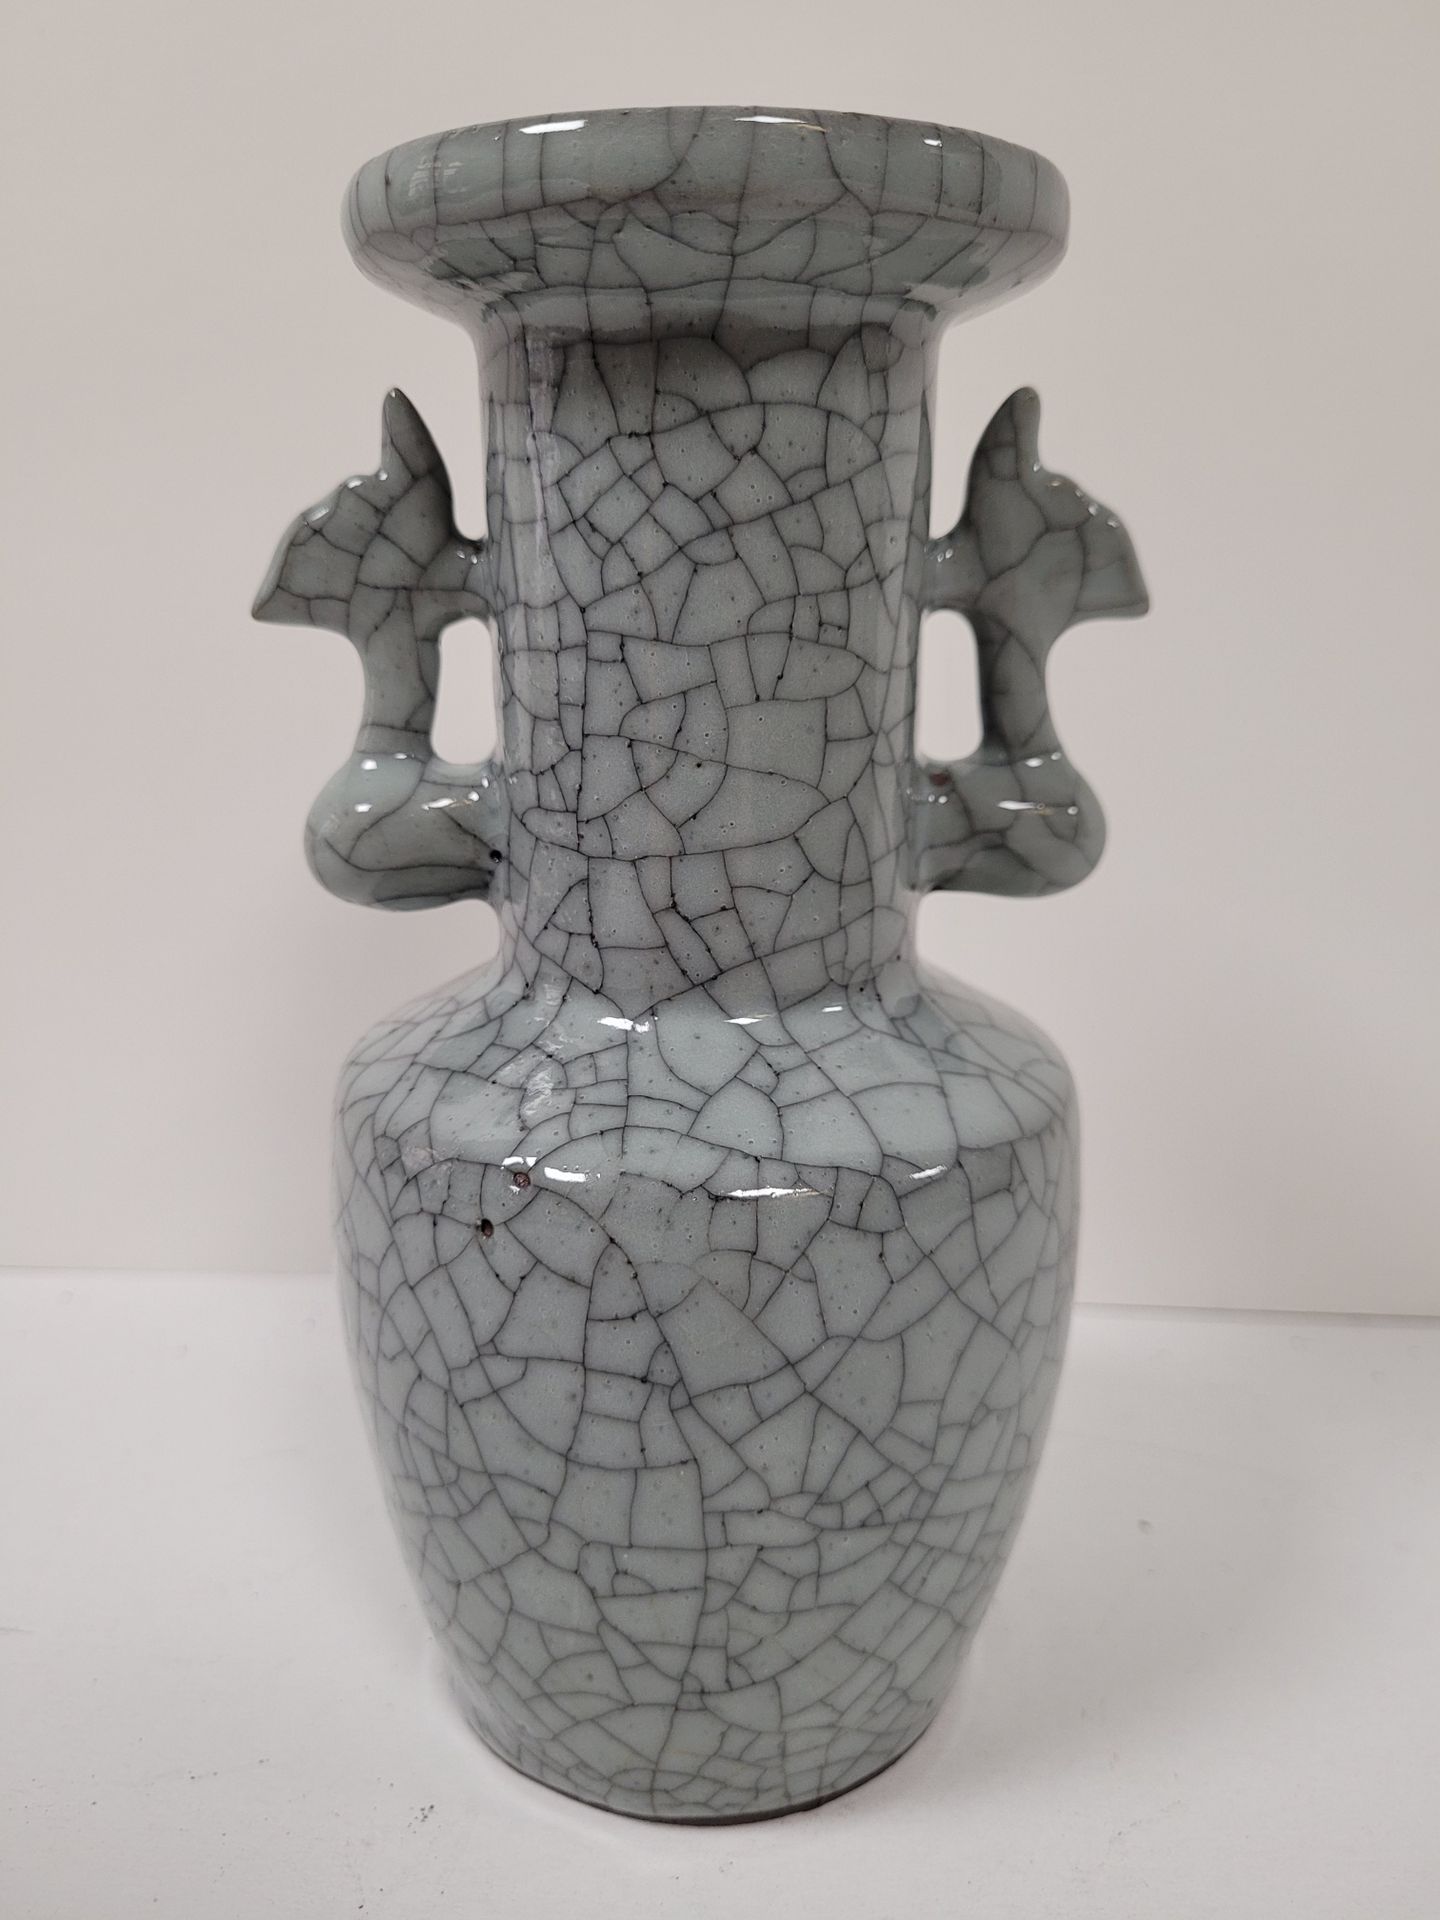 Null 青花瓷裂纹小花瓶，中国，宋代风格，20
世纪初瓶形，有弧形底座，肩部有标记，长的喇叭形颈部有两个风格化的把手
。
底下有穿孔。
高度：16.5厘米